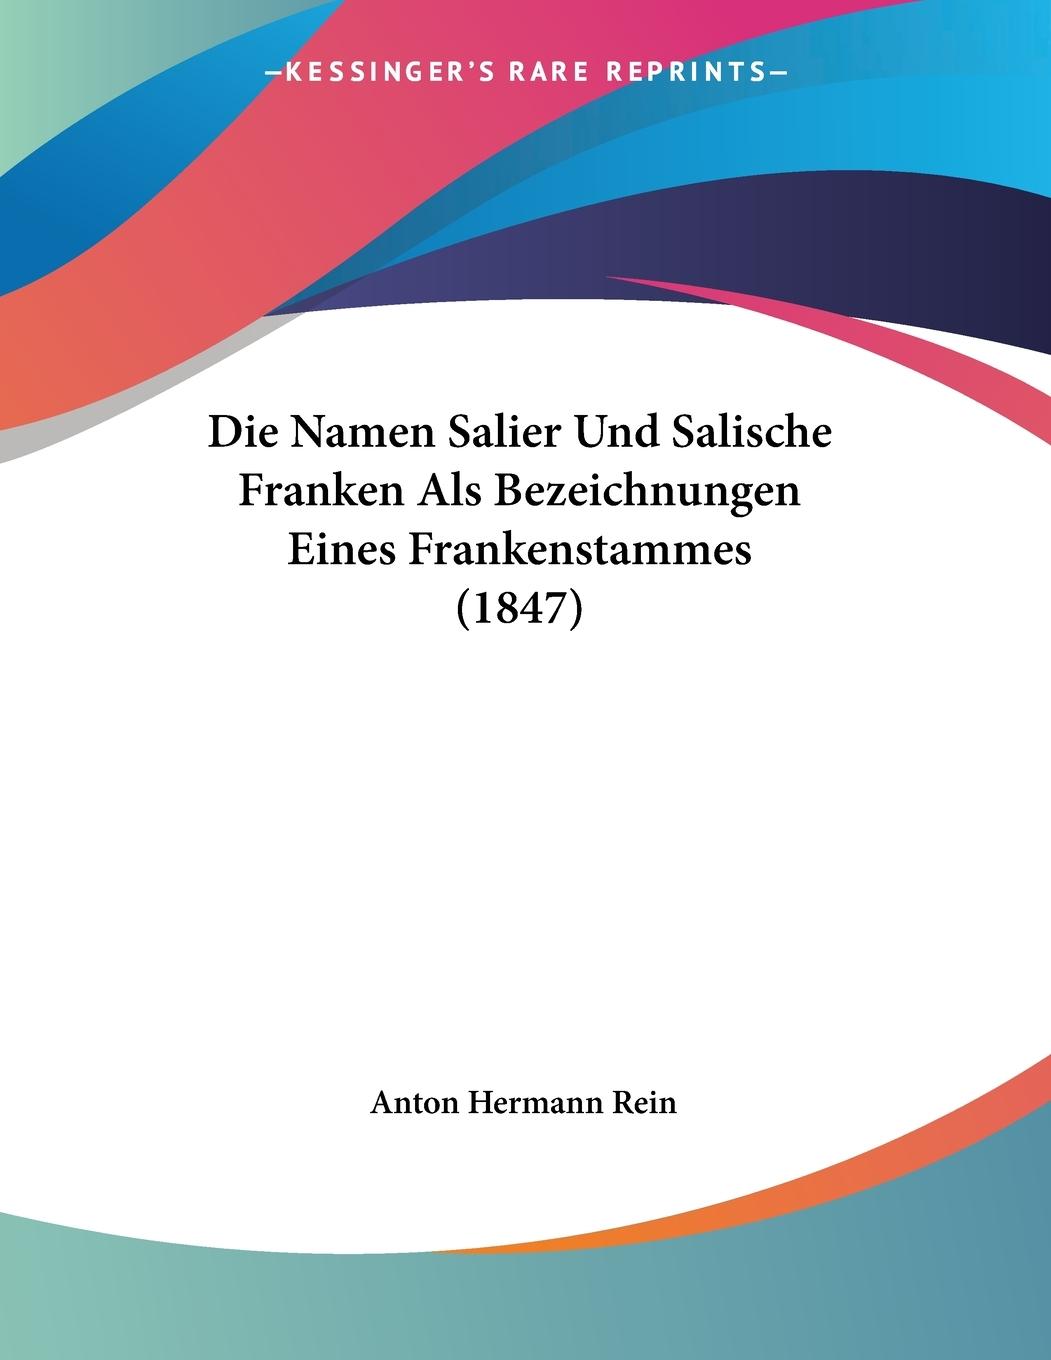 Die Namen Salier Und Salische Franken Als Bezeichnungen Eines Frankenstammes (1847) - Rein, Anton Hermann